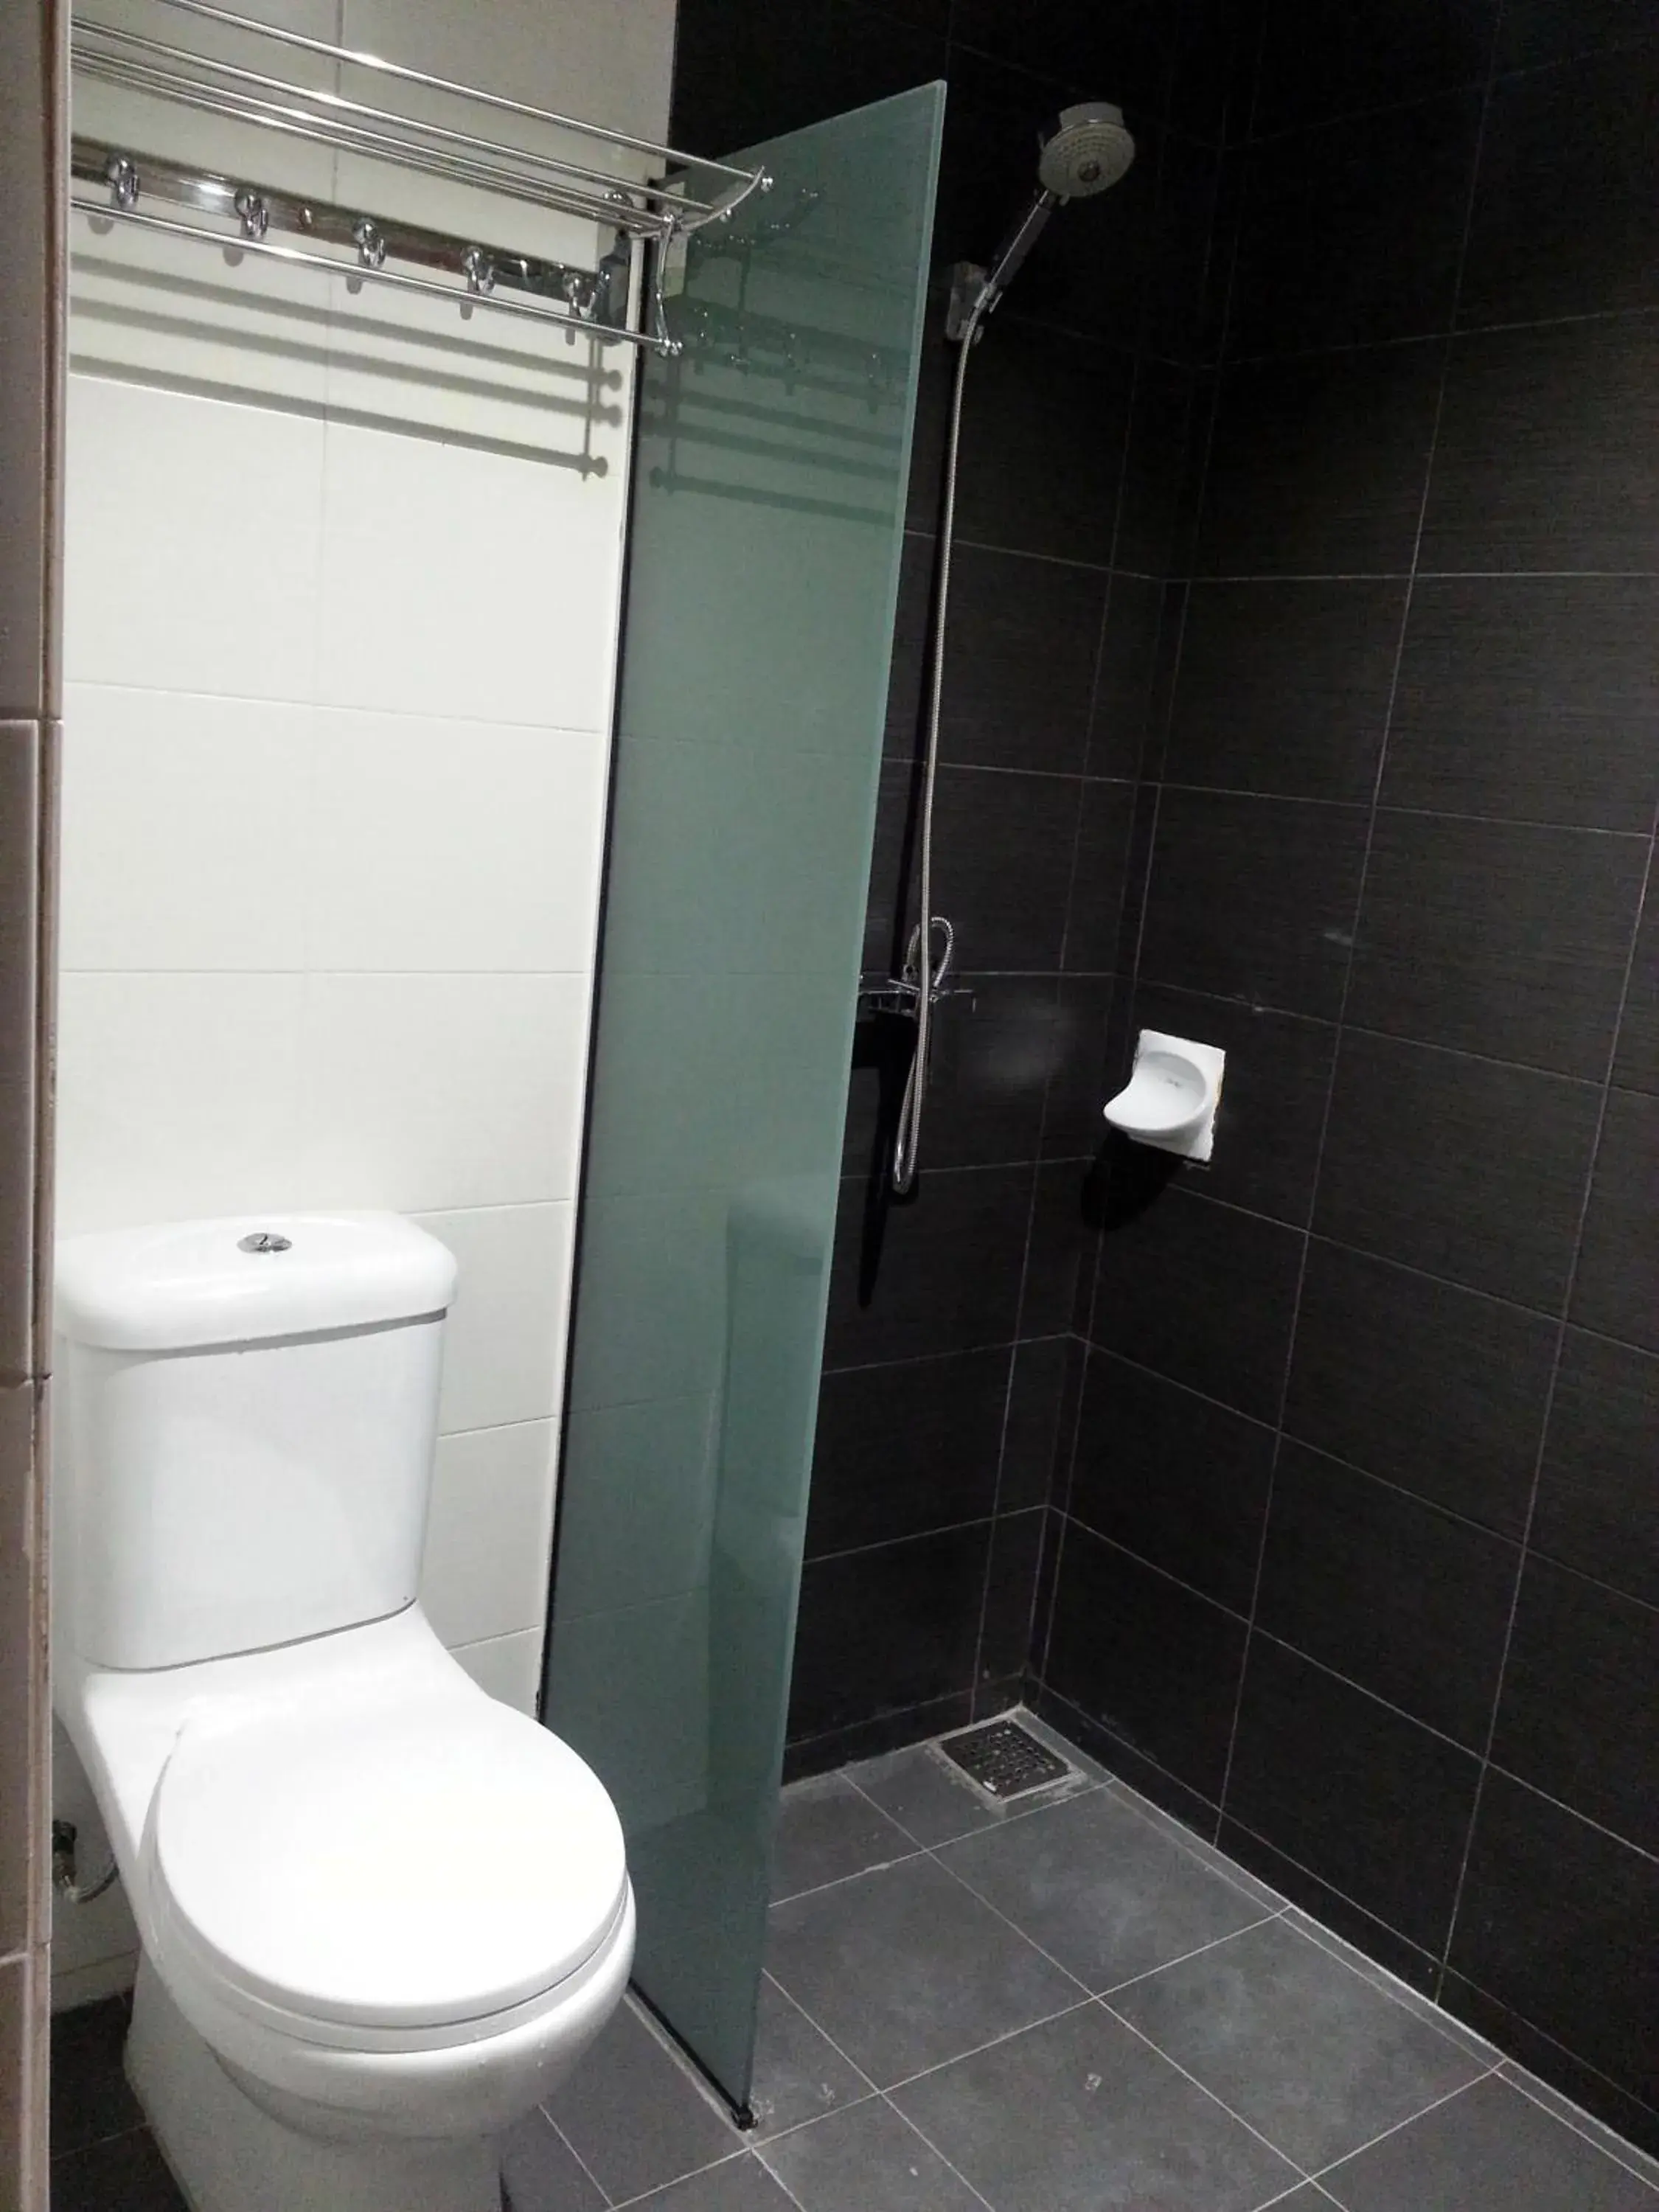 Bathroom in Padungan Hotel